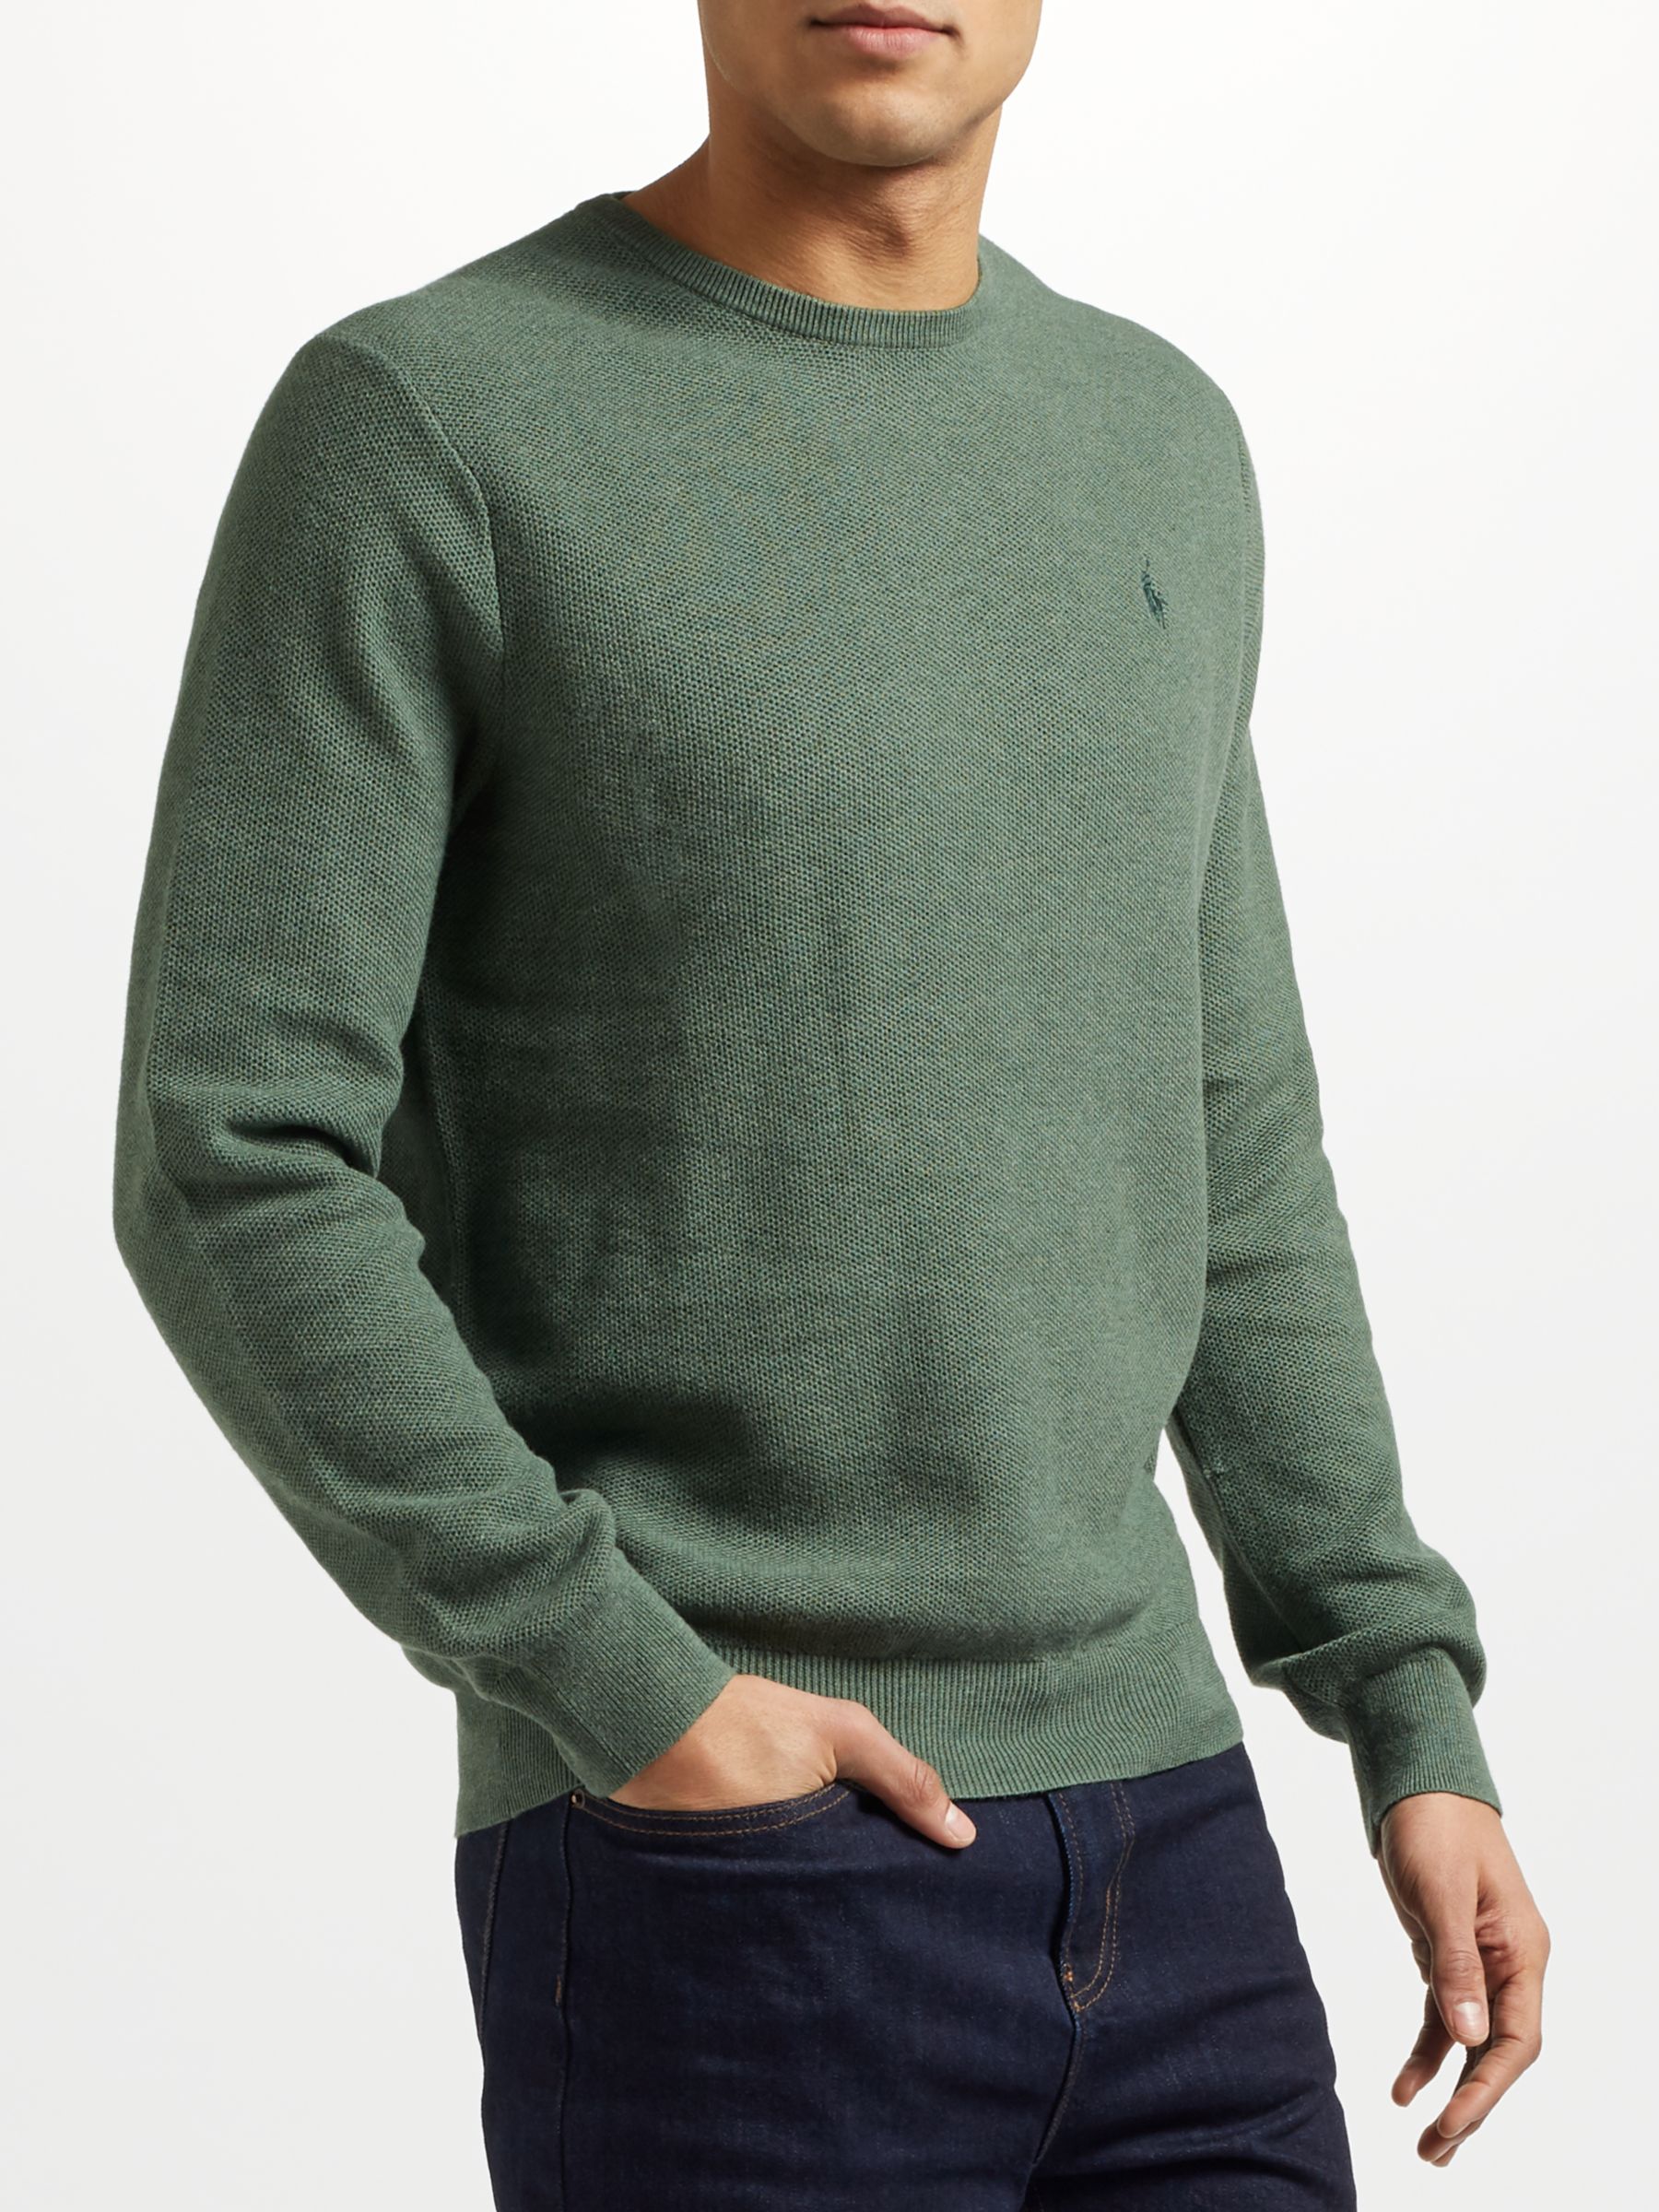 ralph lauren sweater green